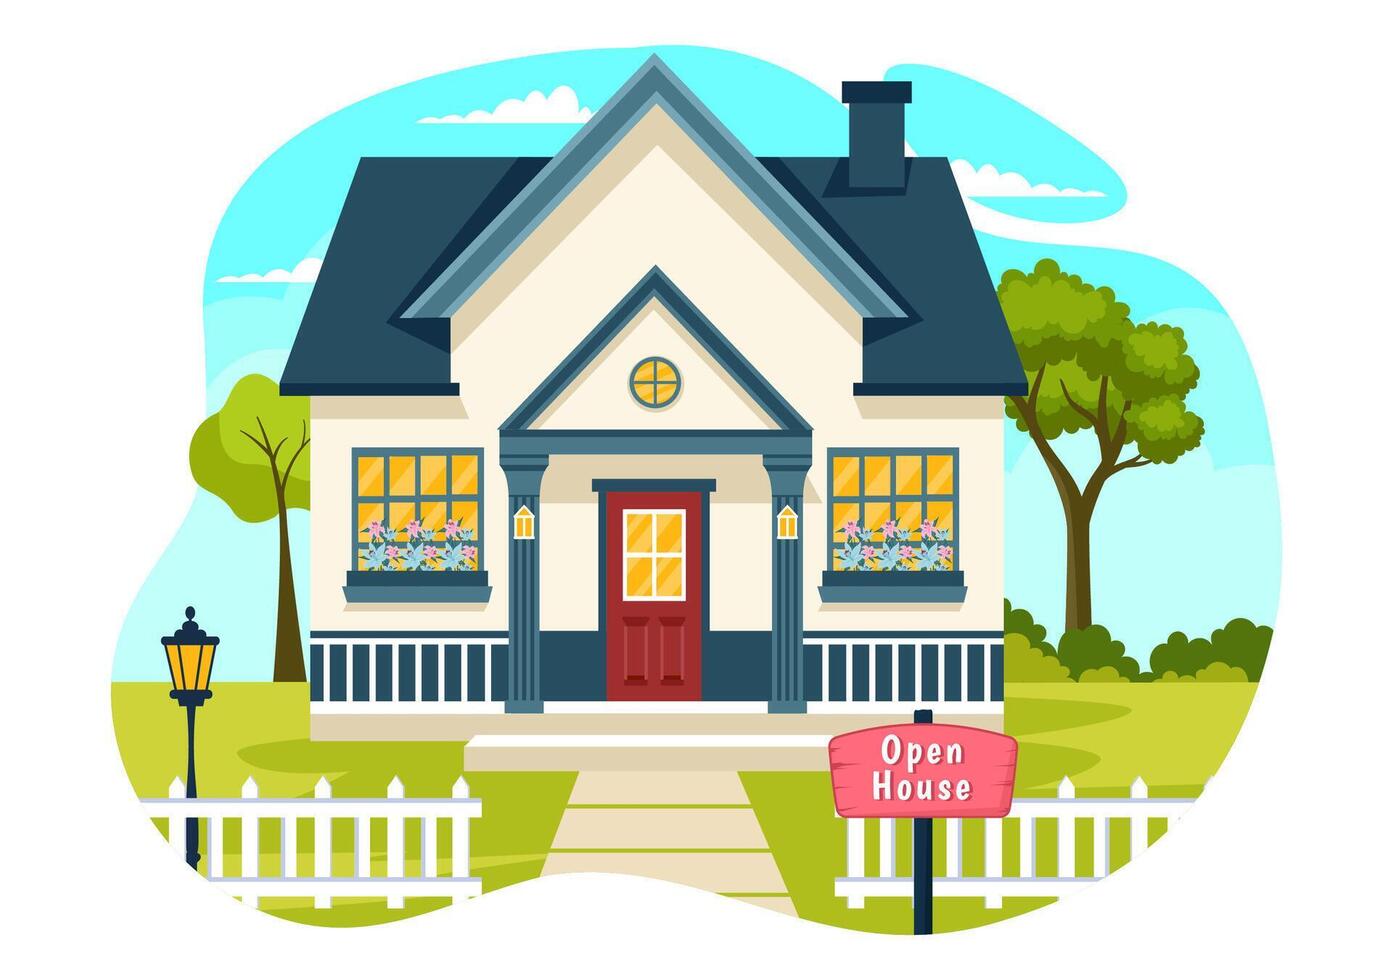 öffnen Haus Illustration zum Inspektion Eigentum herzlich willkommen zu Ihre Neu Zuhause echt Nachlass Bedienung im eben Karikatur Hintergrund Design vektor